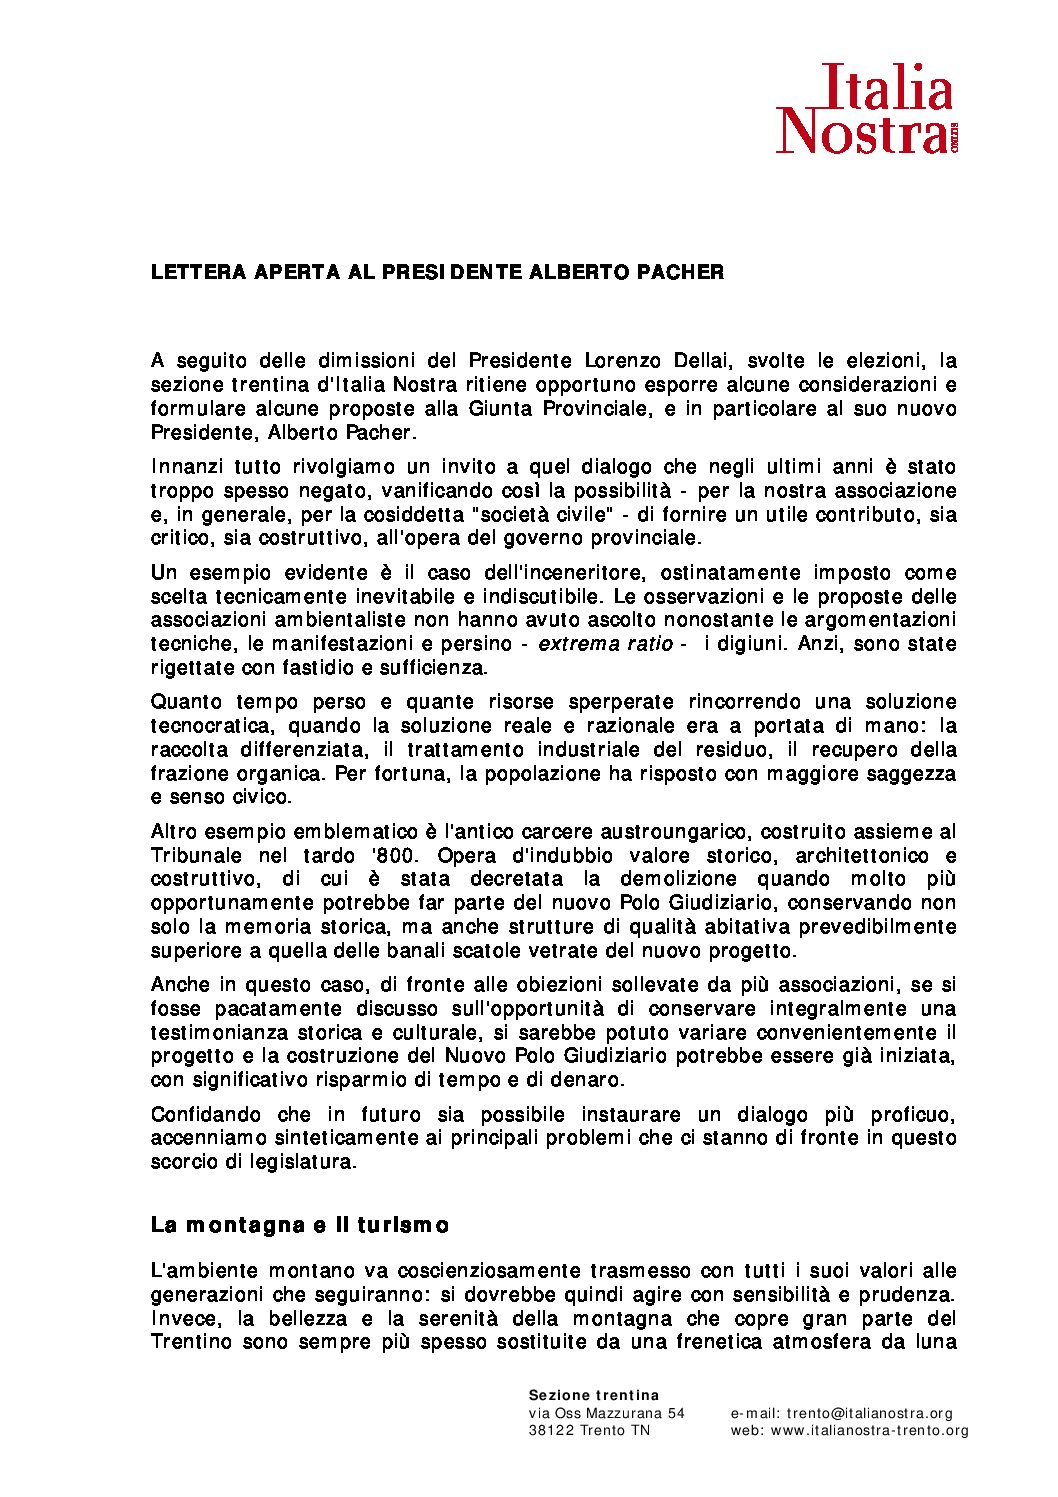 Lettera aperta al Presidente della Giunta Provinciale, dott. Alberto Pacher